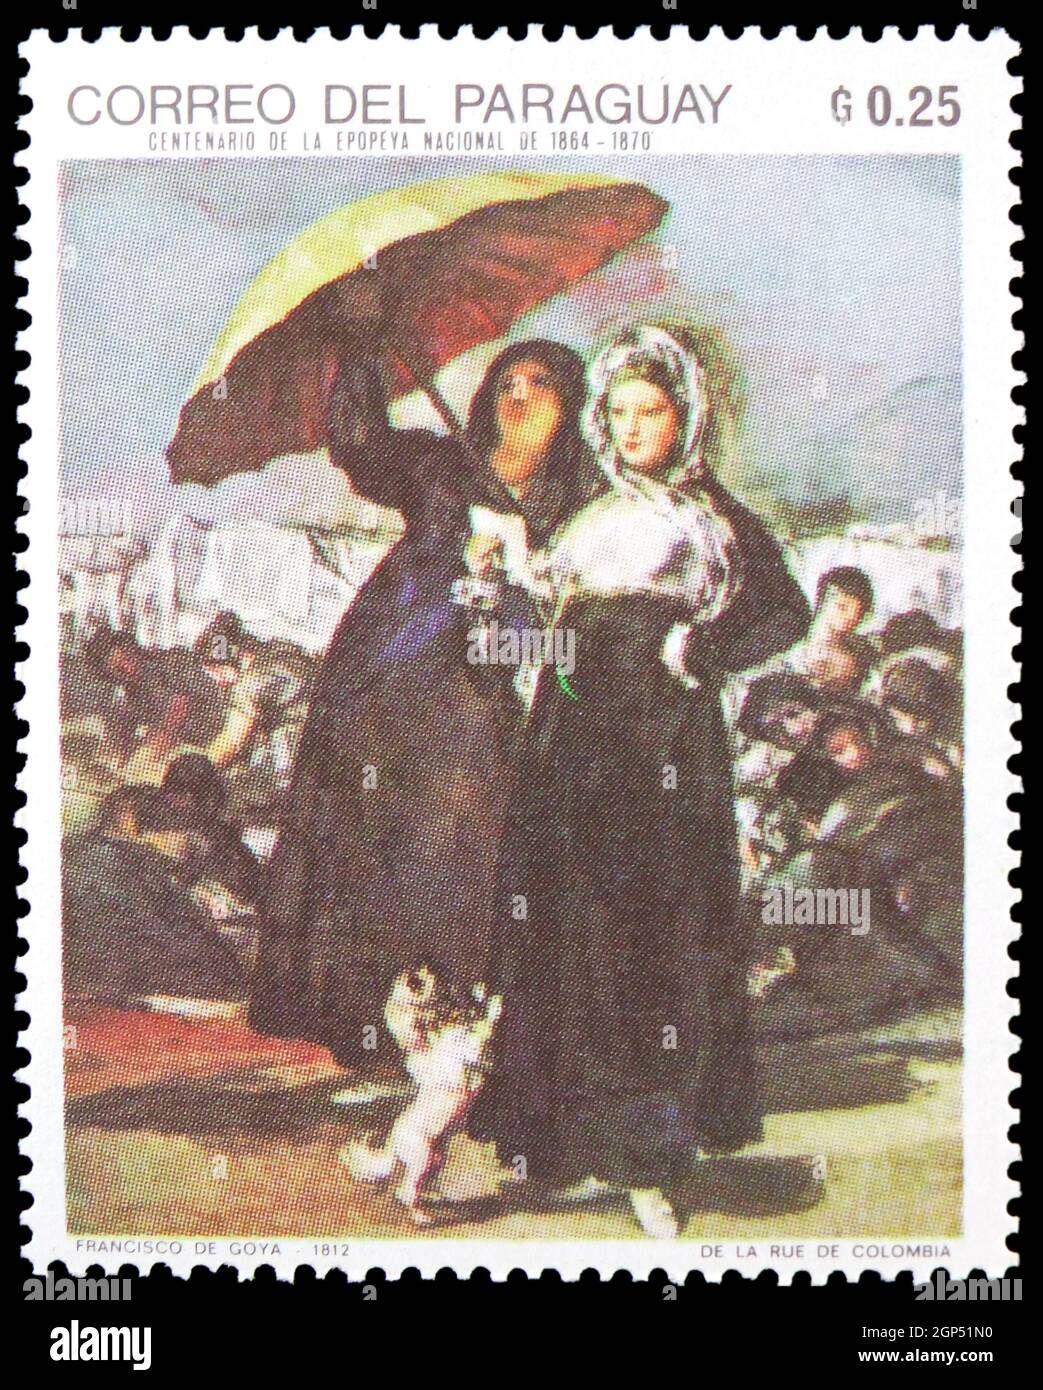 MOSCOU, RUSSIE - 5 AOÛT 2021 : le timbre-poste imprimé au Paraguay montre la lettre ou la série de peinture espagnole Young, de Goya Francisco (1746-1828) Banque D'Images